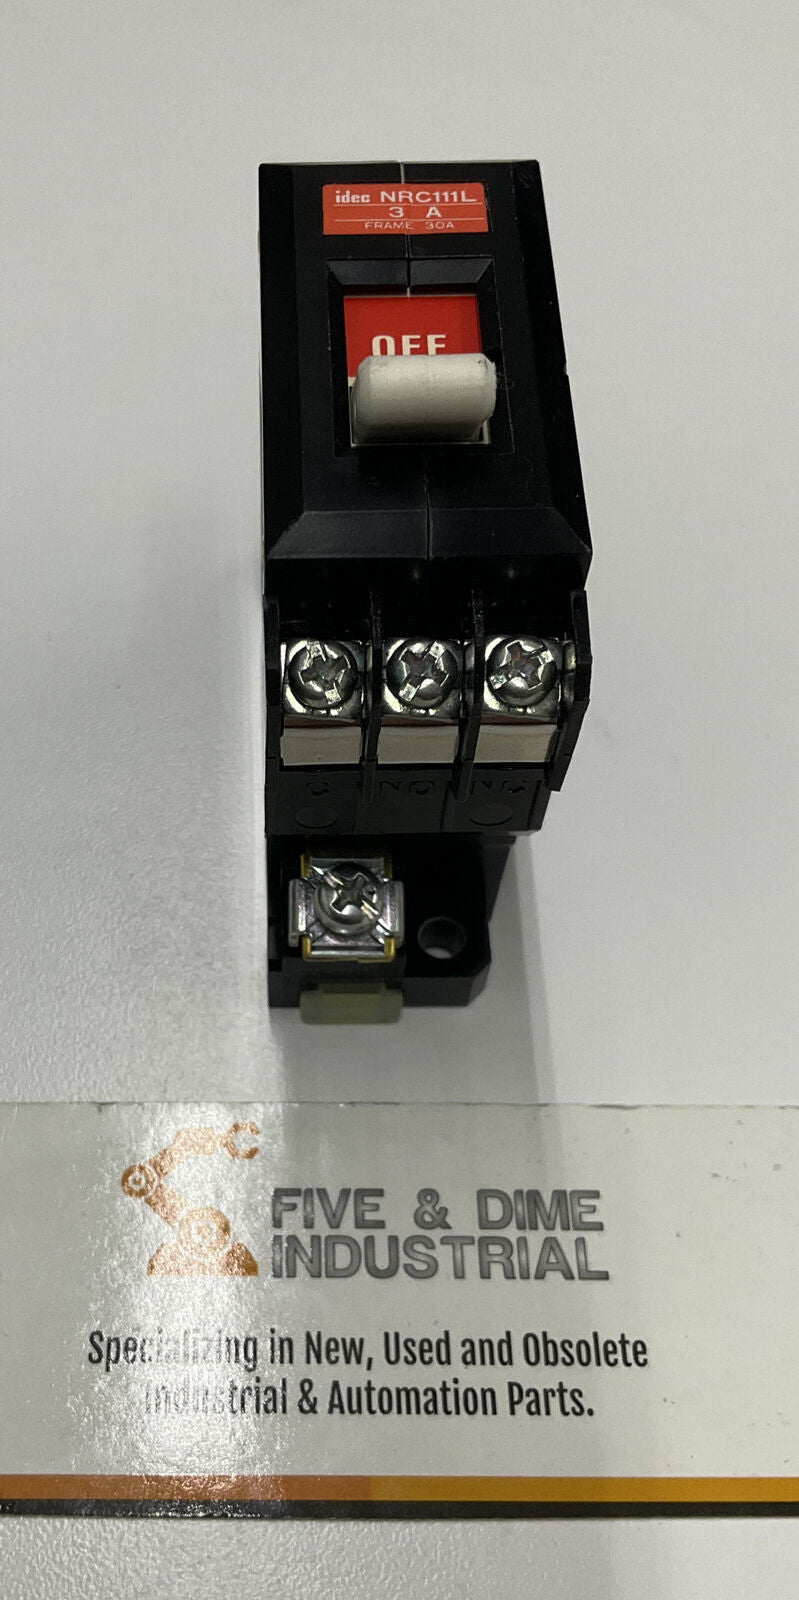 IDEC NRC111L New Circuit Breaker (BL256)